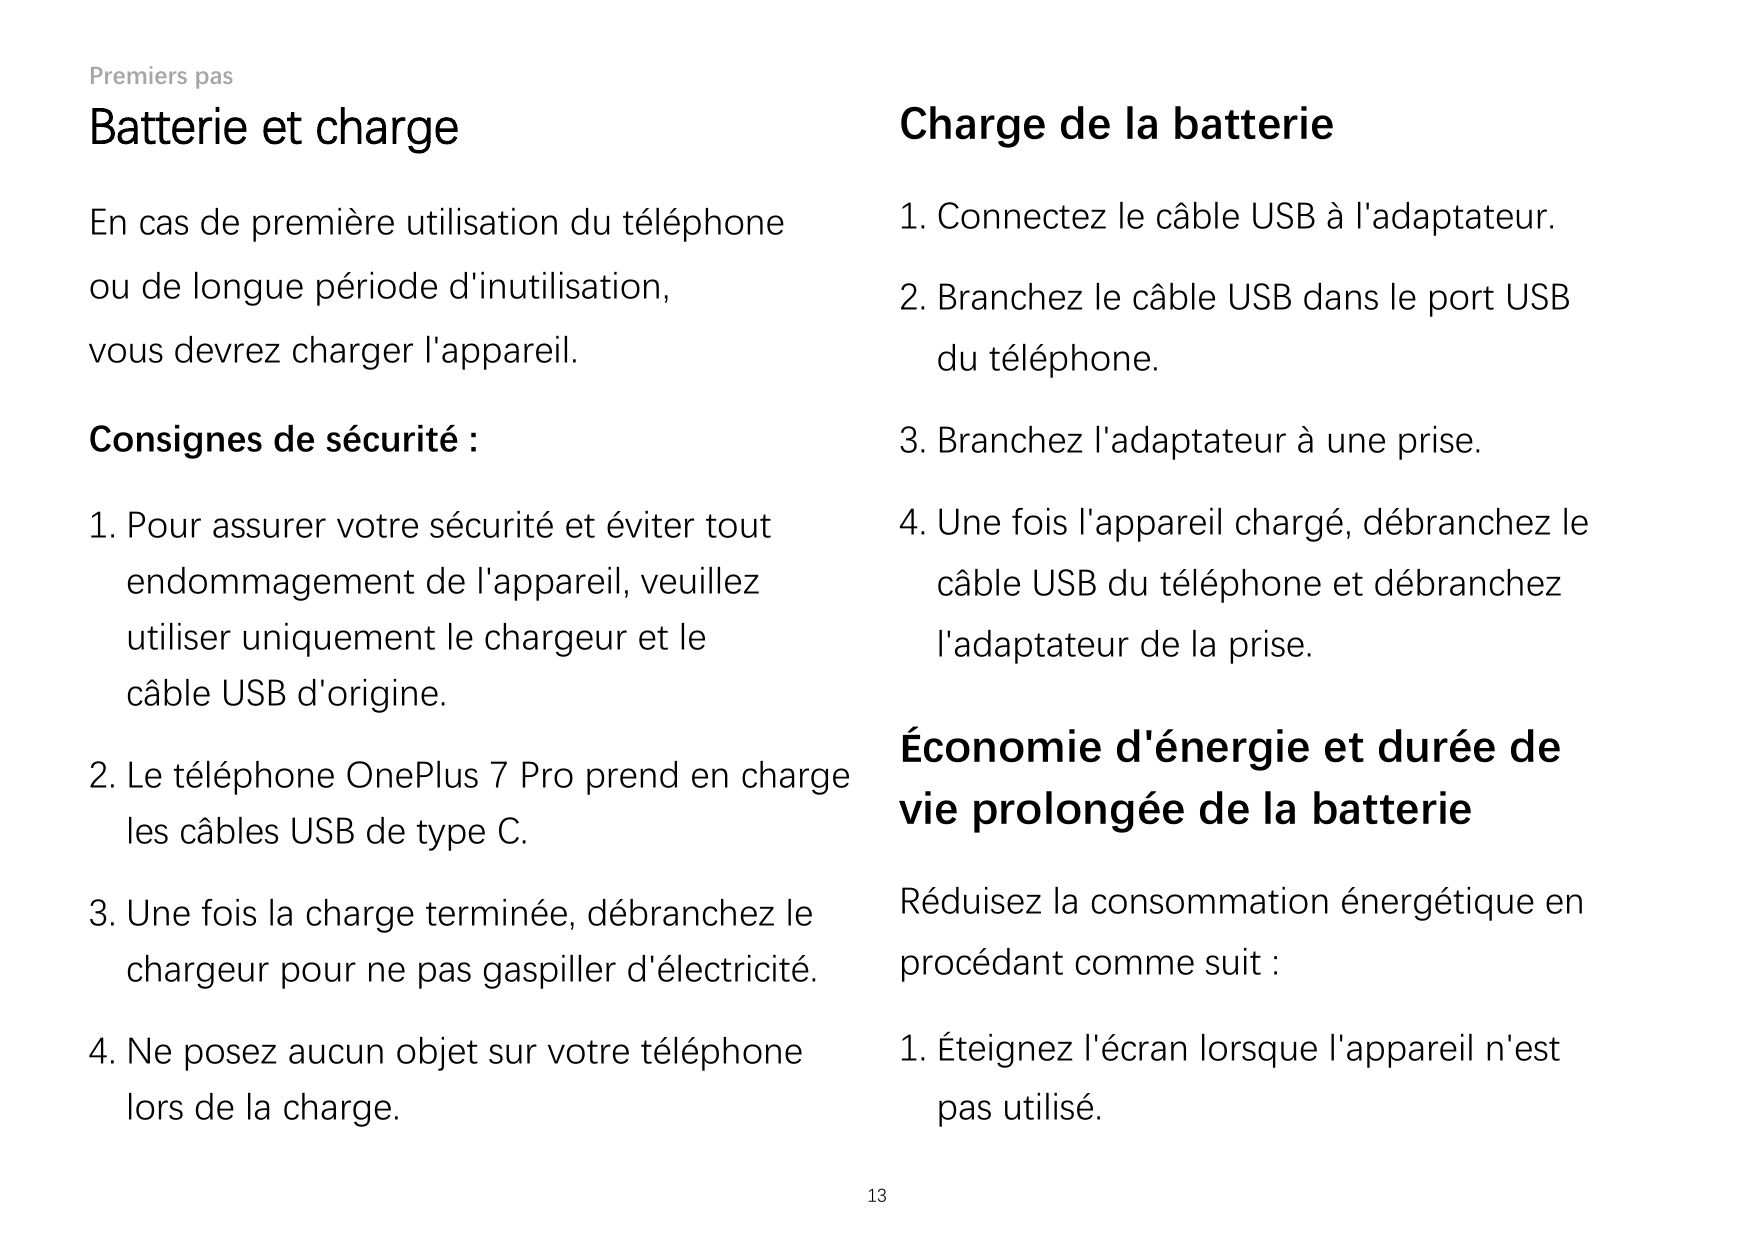 Premiers pasBatterie et chargeCharge de la batterieEn cas de première utilisation du téléphone1. Connectez le câble USB à l'adap